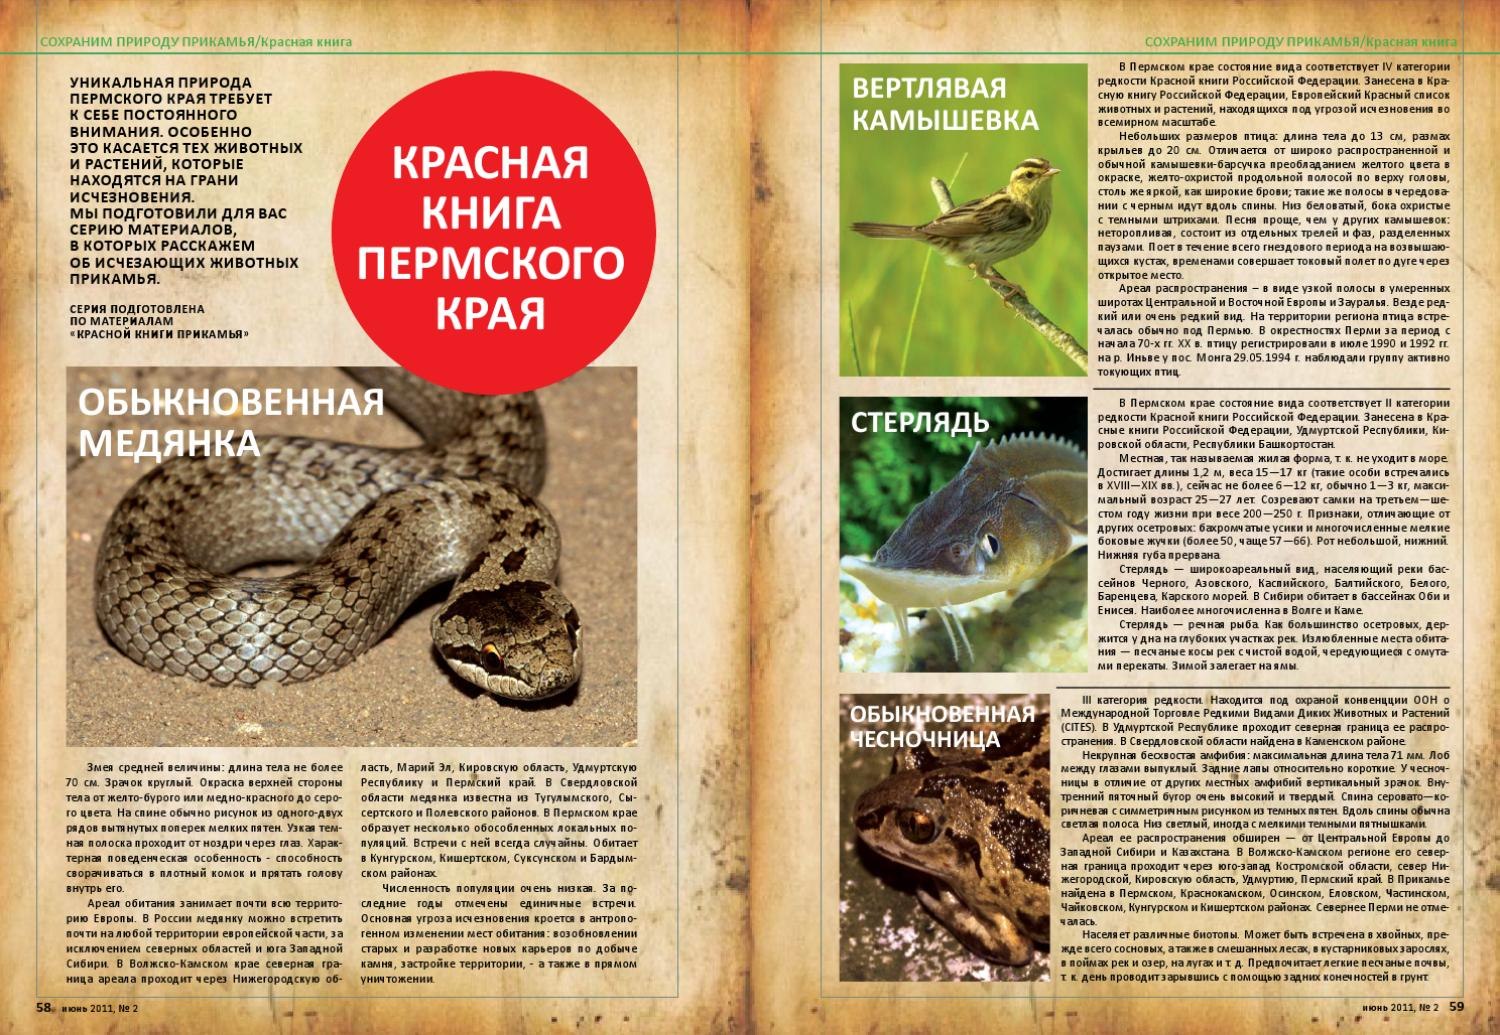 Какие животные в красной книге пермского края